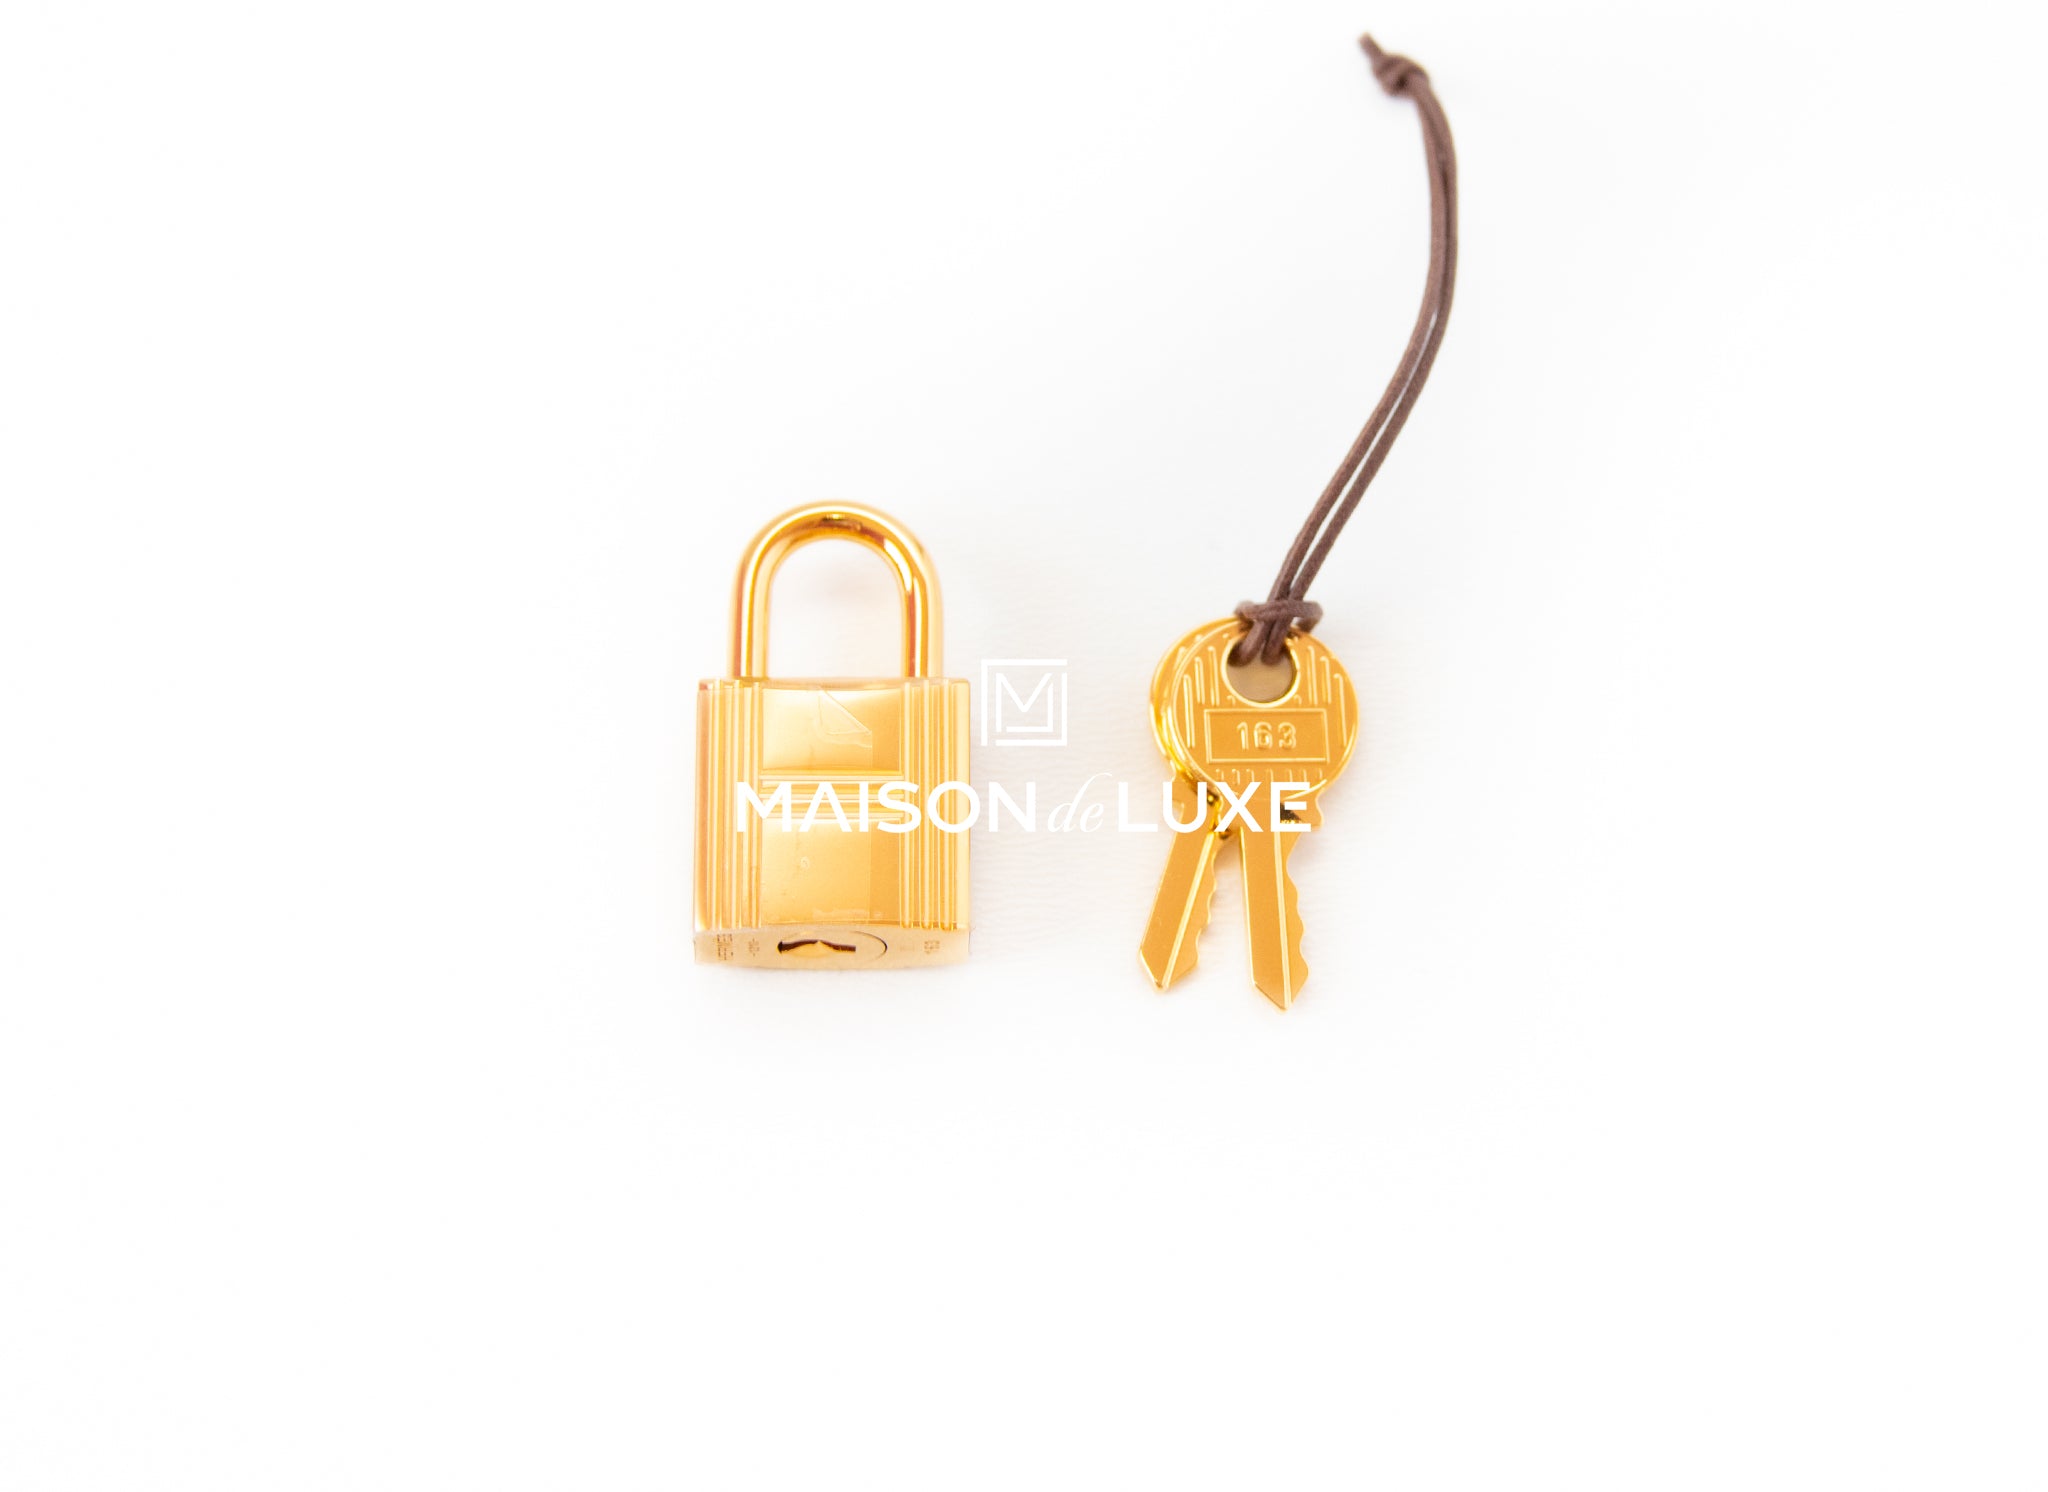 Hermès Gold Clémence Picotin Lock 22